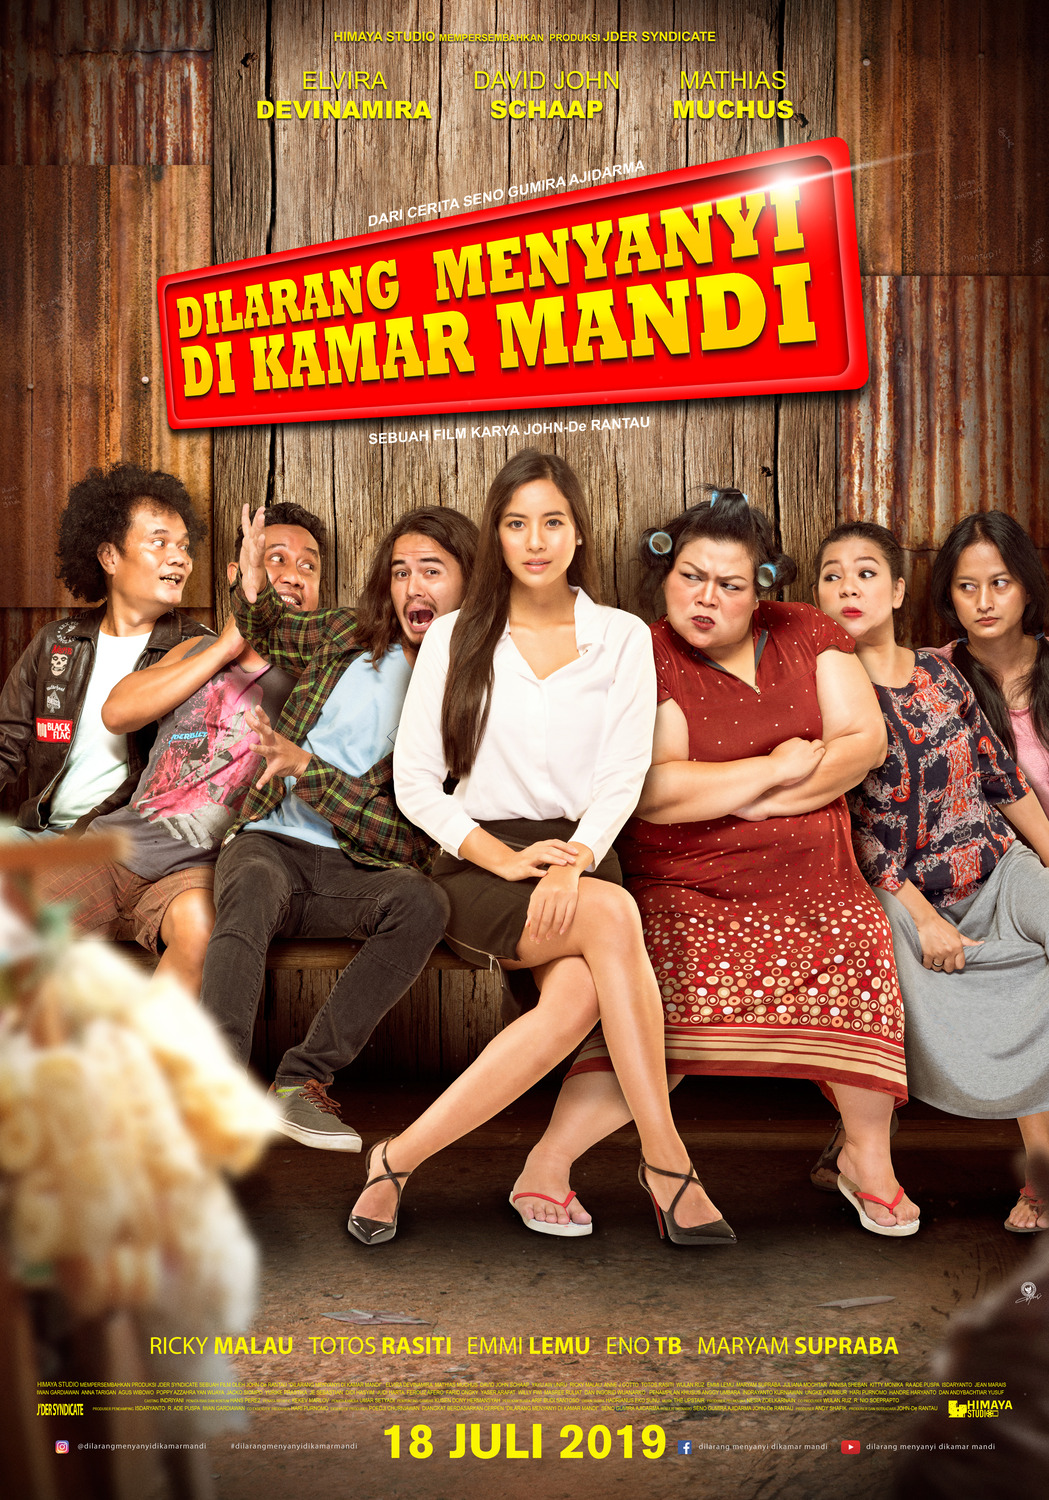 Extra Large Movie Poster Image for Dilarang Menyanyi di Kamar Mandi (#1 of 2)